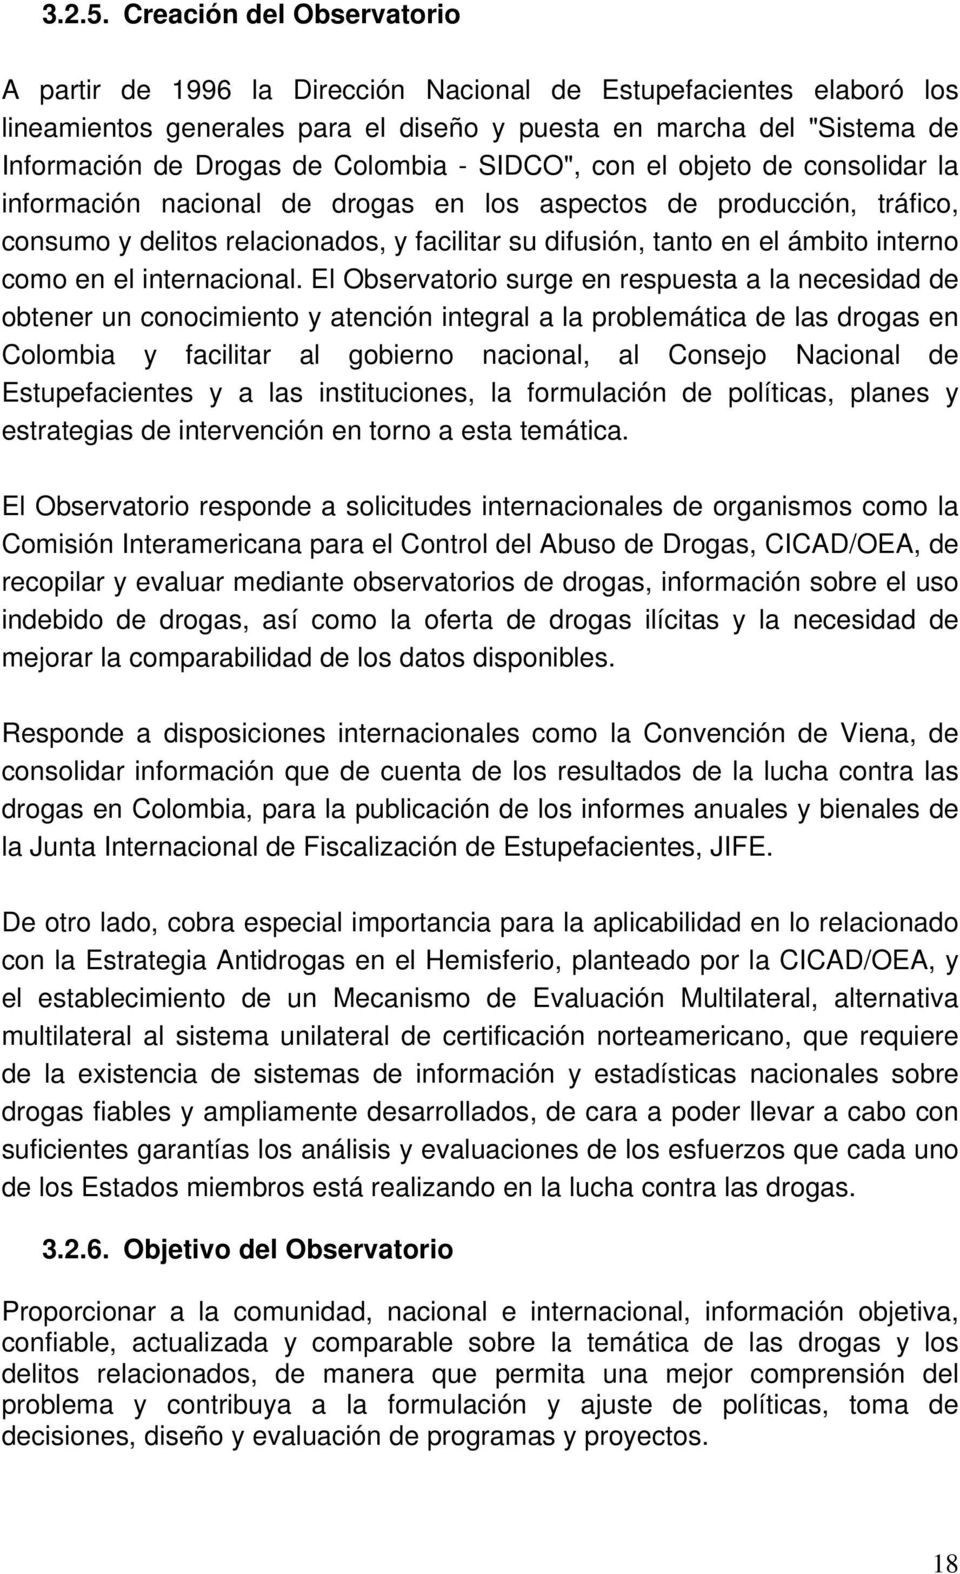 Colombia - SIDCO", con el objeto de consolidar la información nacional de drogas en los aspectos de producción, tráfico, consumo y delitos relacionados, y facilitar su difusión, tanto en el ámbito